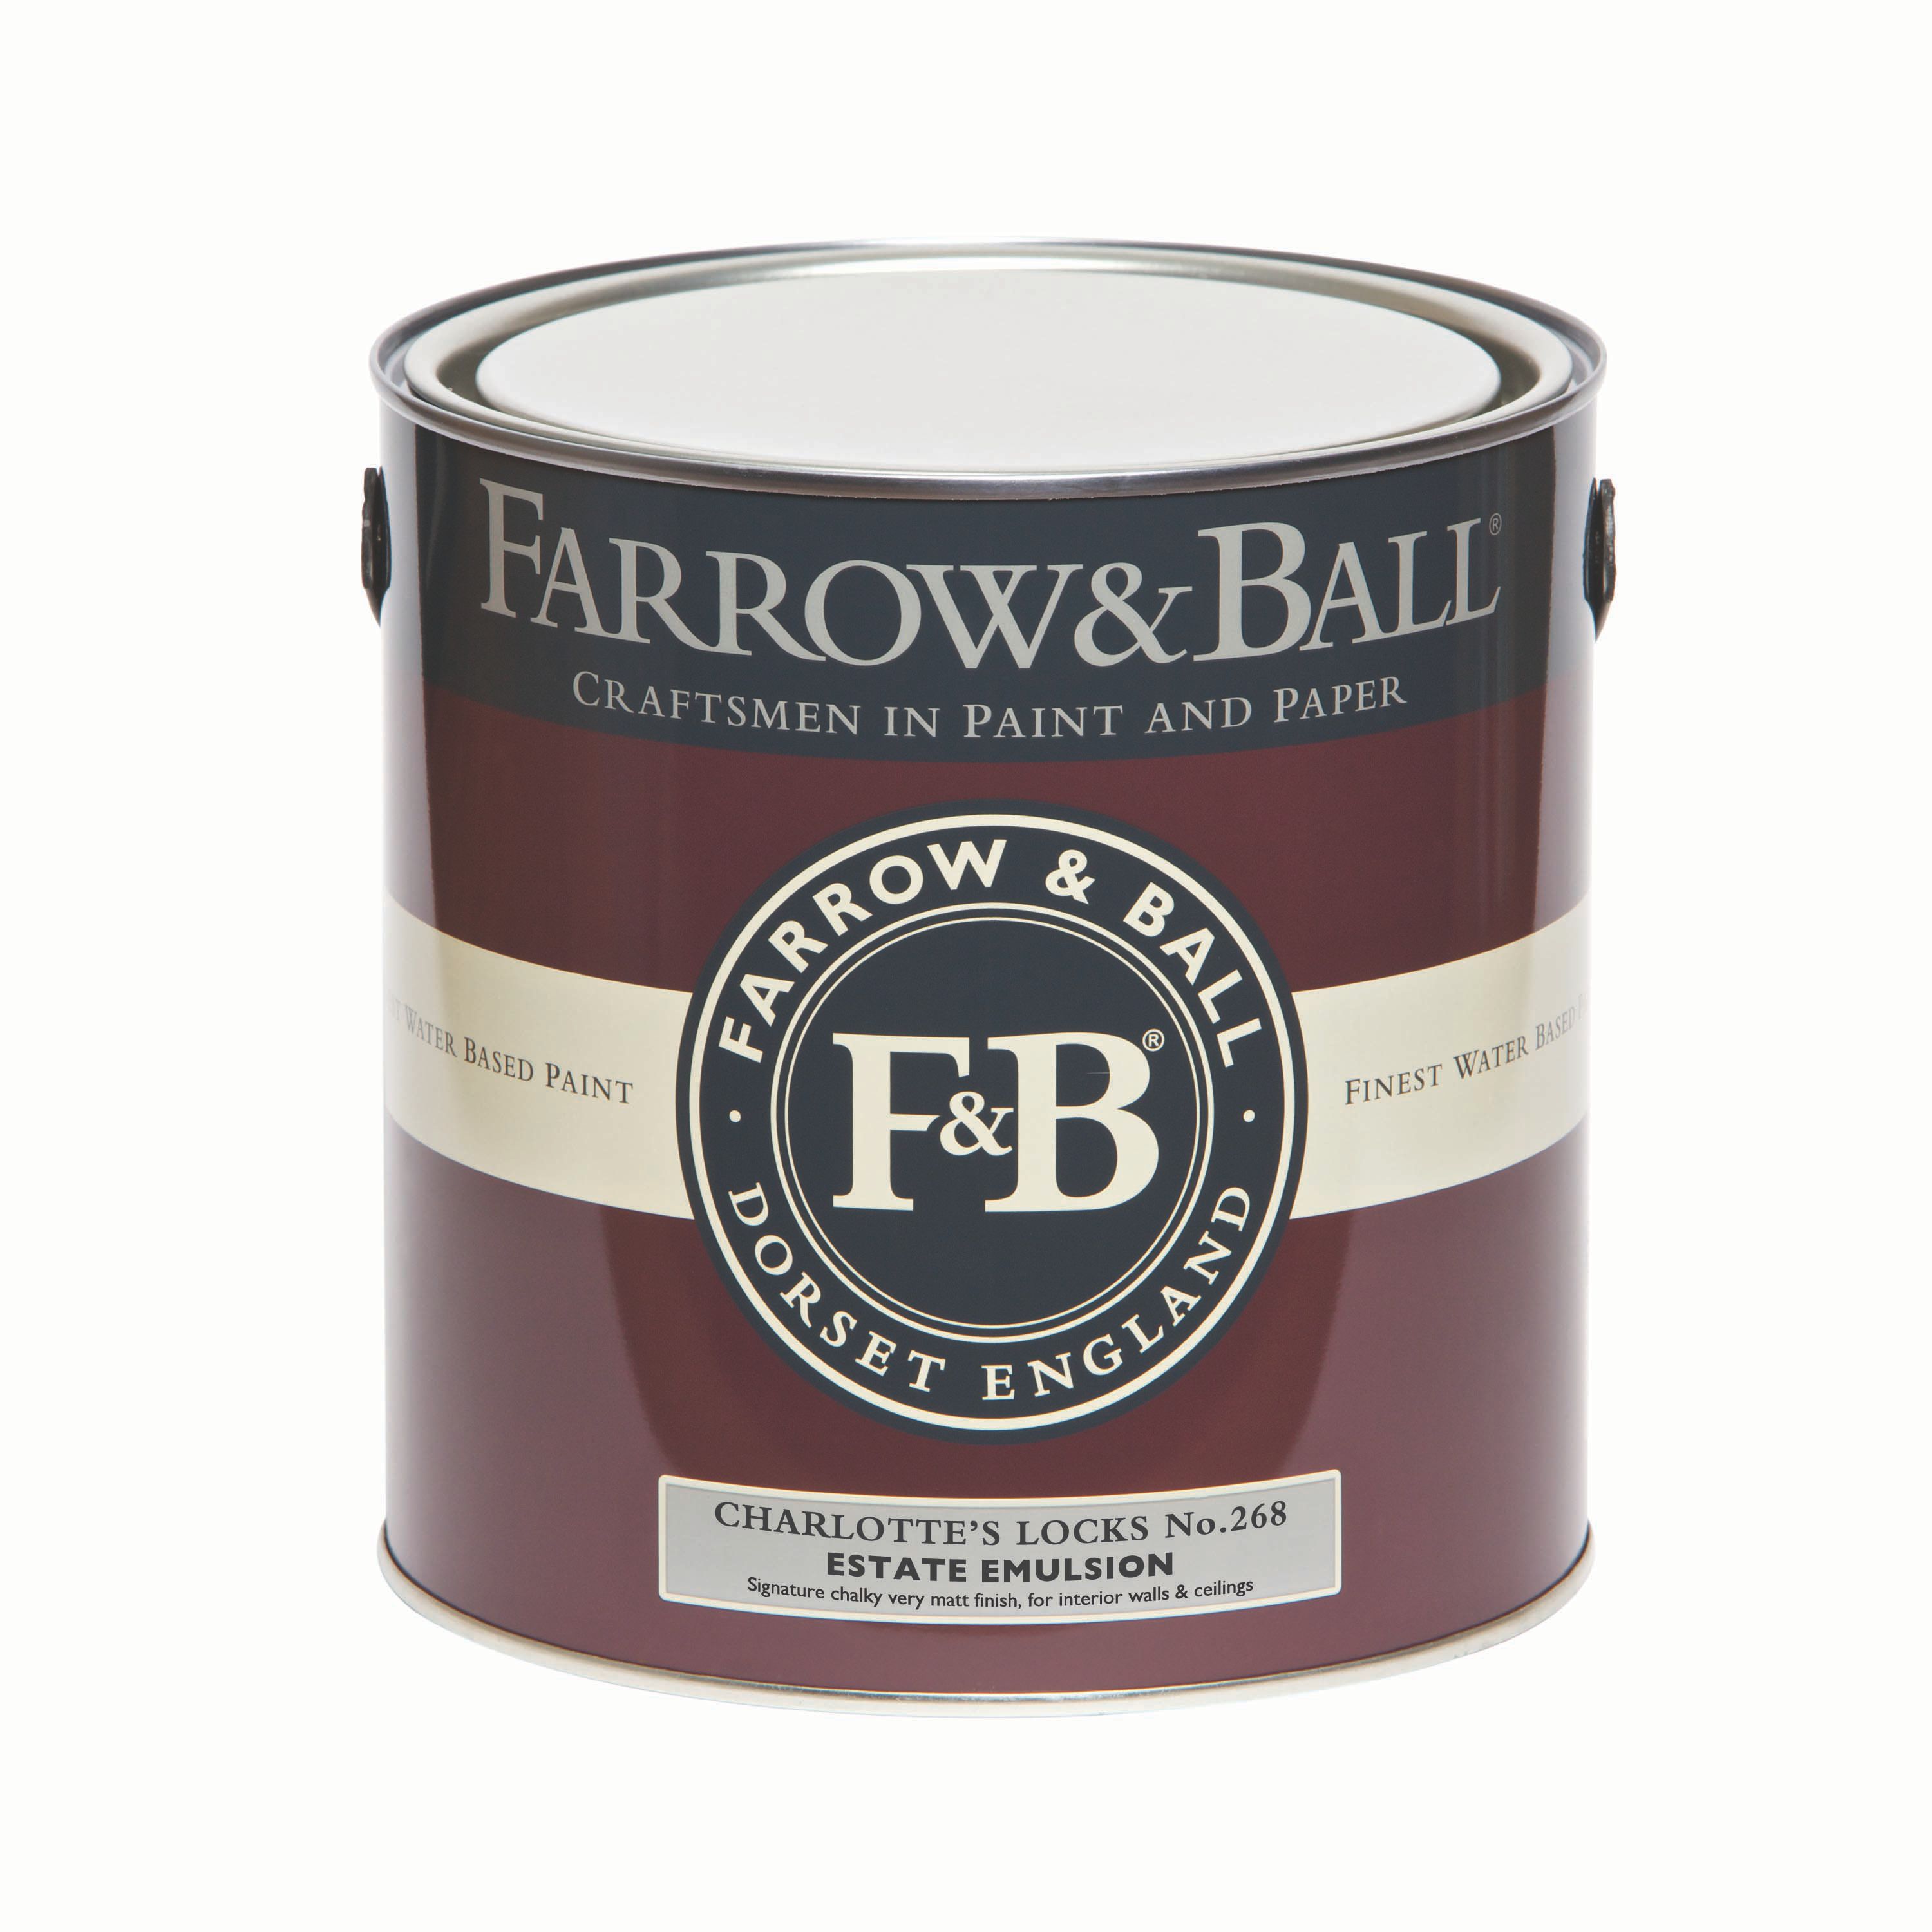 Farrow & Ball Estate Charlotte's locks No.268 Matt Emulsion paint, 2.5L